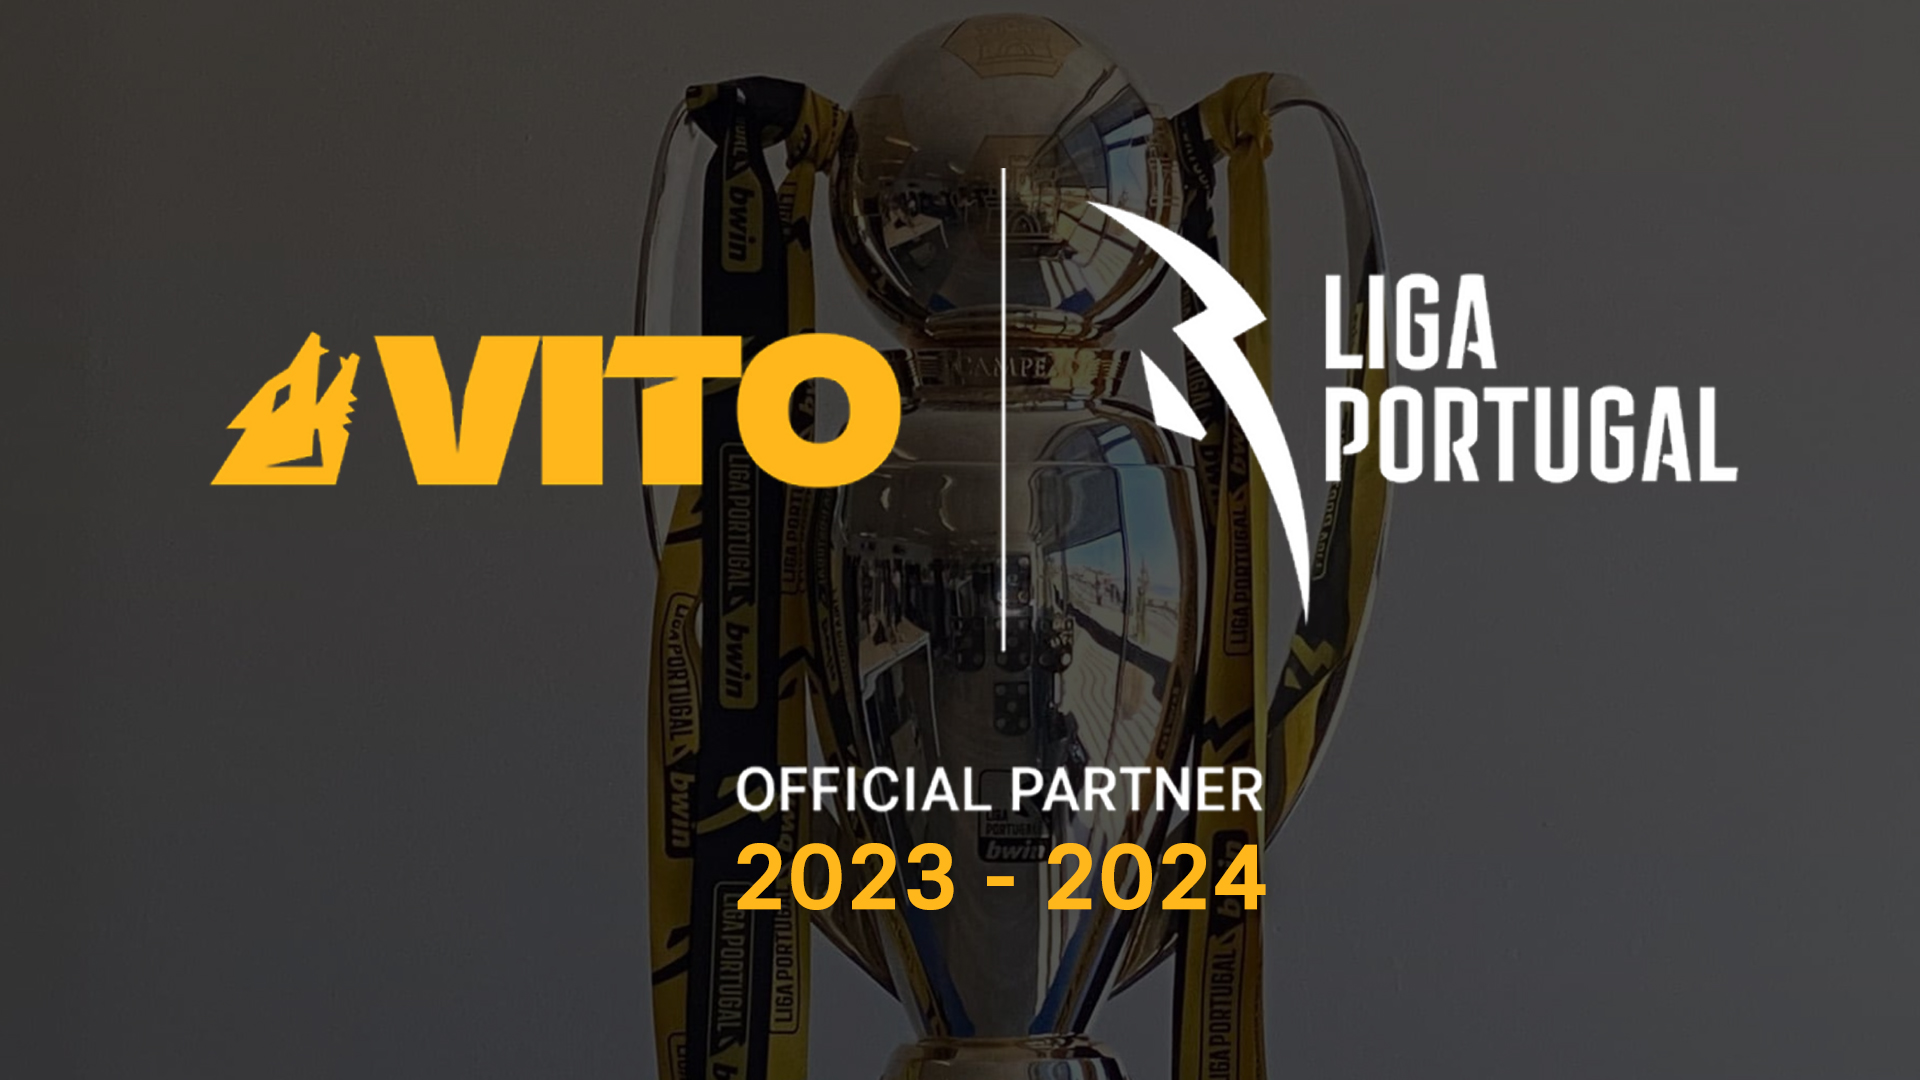 Asociación de éxito - Renovación del patrocinio de la Liga Portugal por tercera temporada consecutiva.